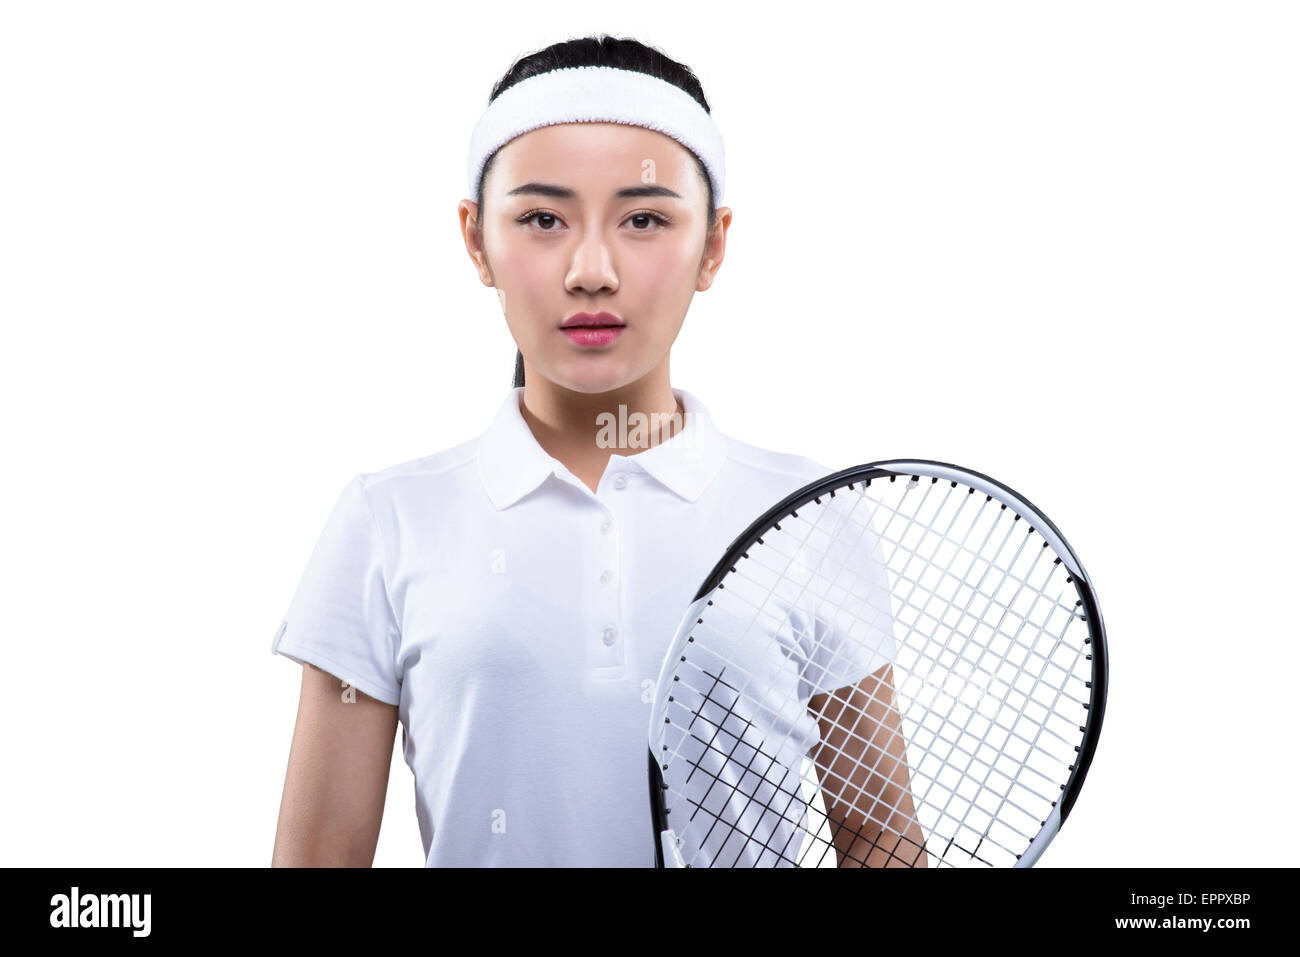 Junge Frau in Tennis-Outfit mit Schläger Stockfoto